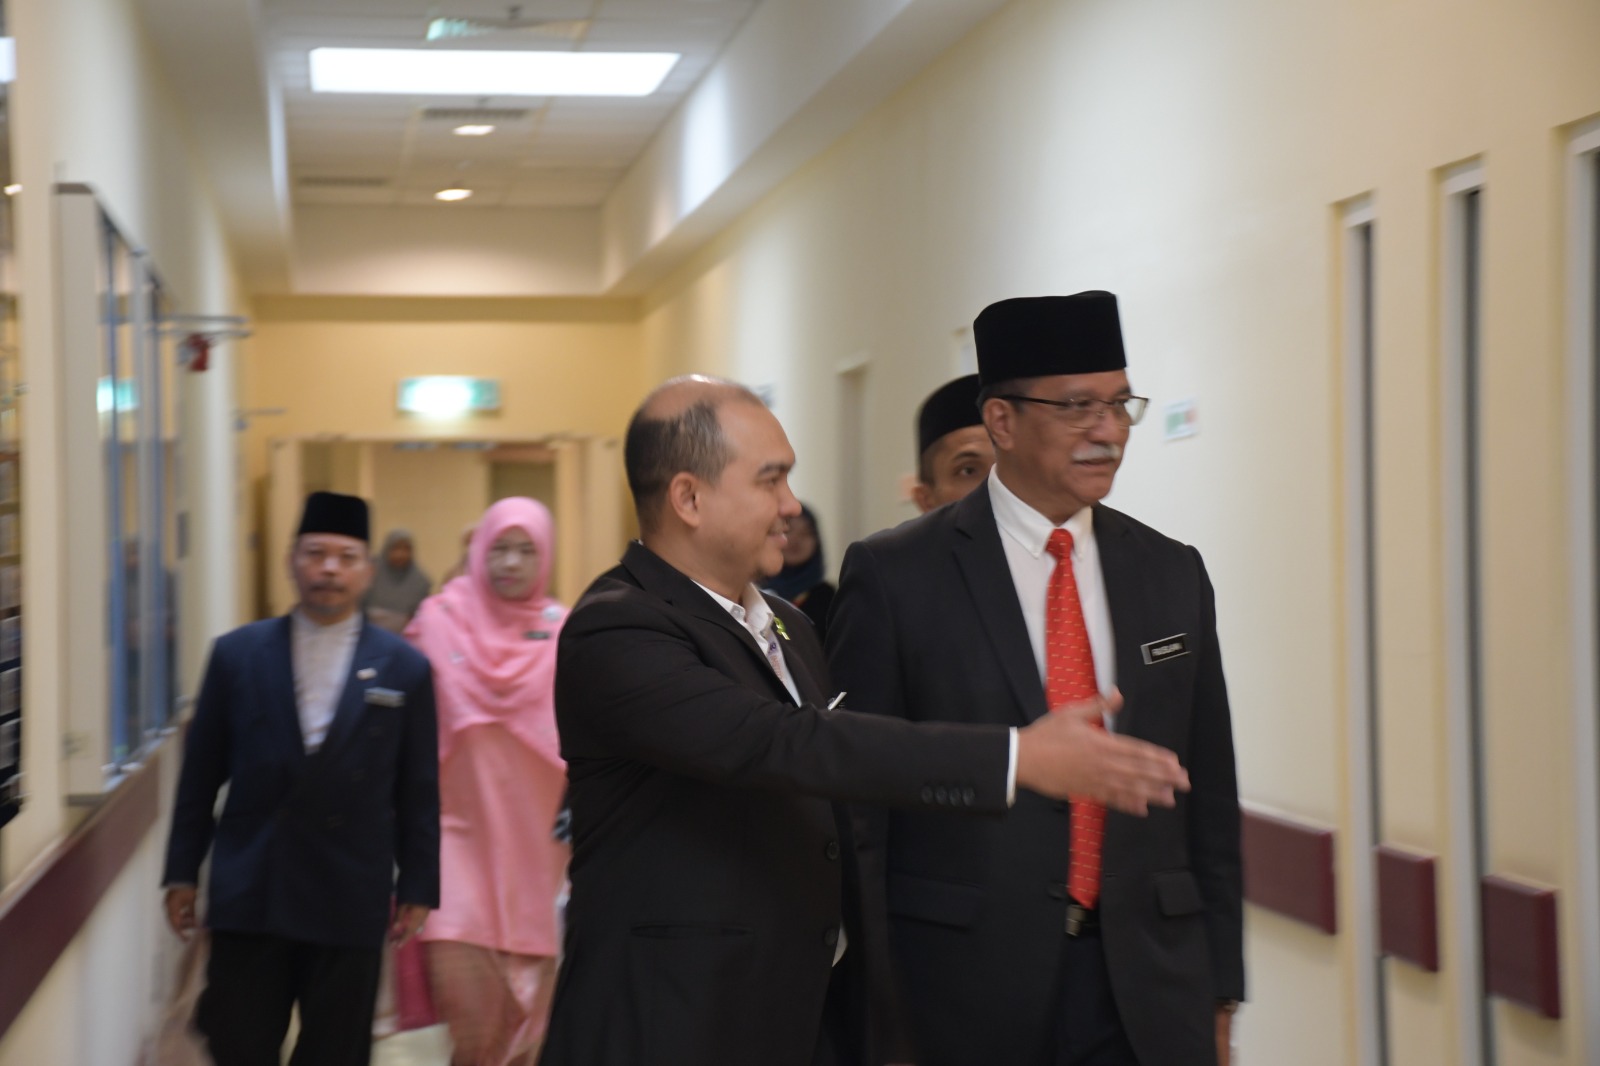 Kunjungan Hormat Timbalan Ketua Pengarah Operasi Jakim Ke Institut Kanser Negara Ikn Putrajaya 08